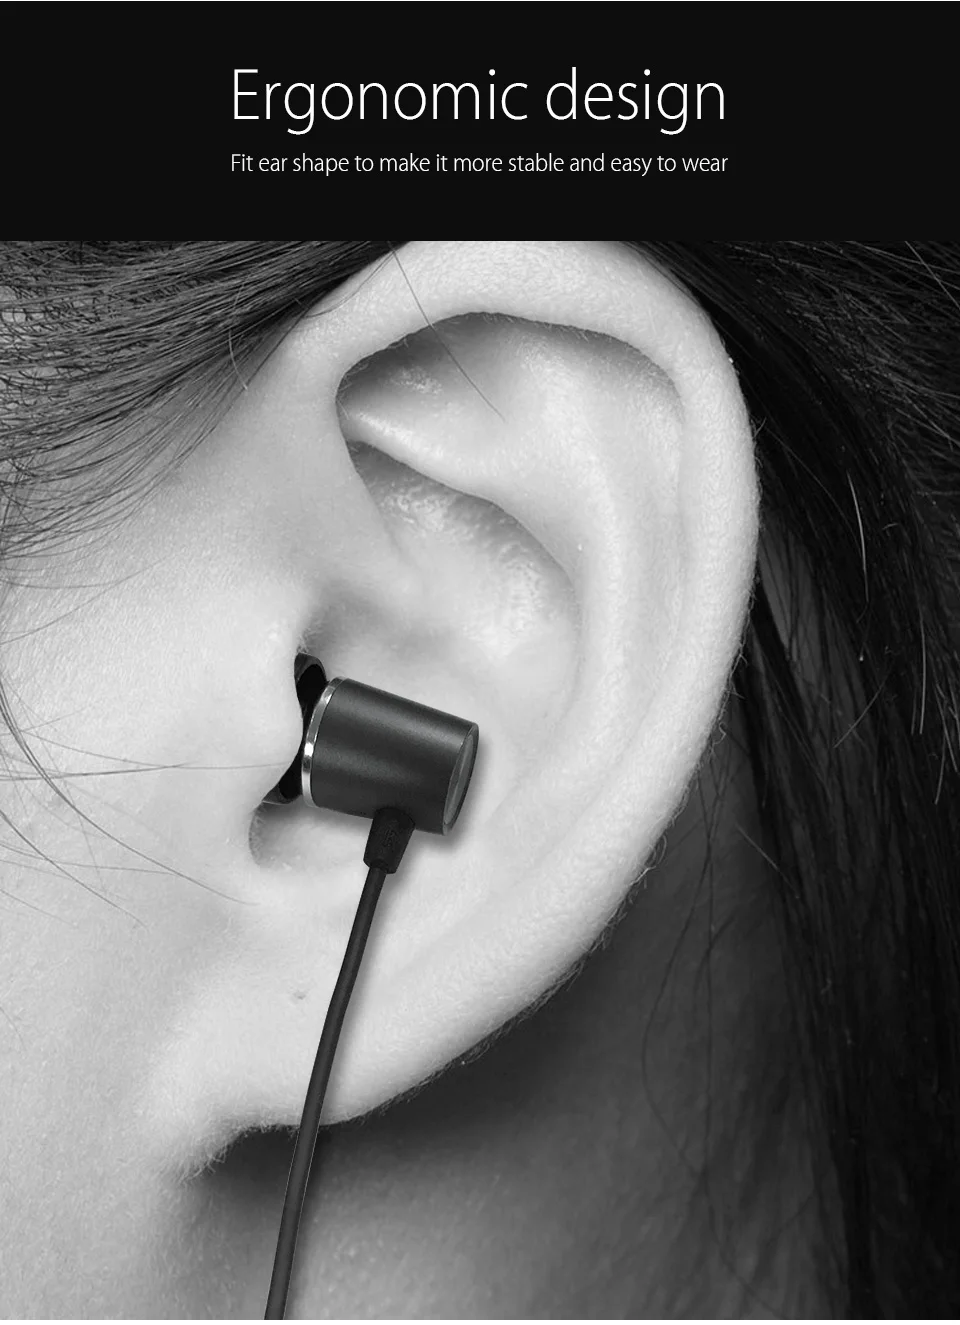 Doosl металлические Hi-Fi наушники-вкладыши тяжелый бас качество звука музыкальные наушники стерео наушники гарнитура для iPhone fone de ouvido